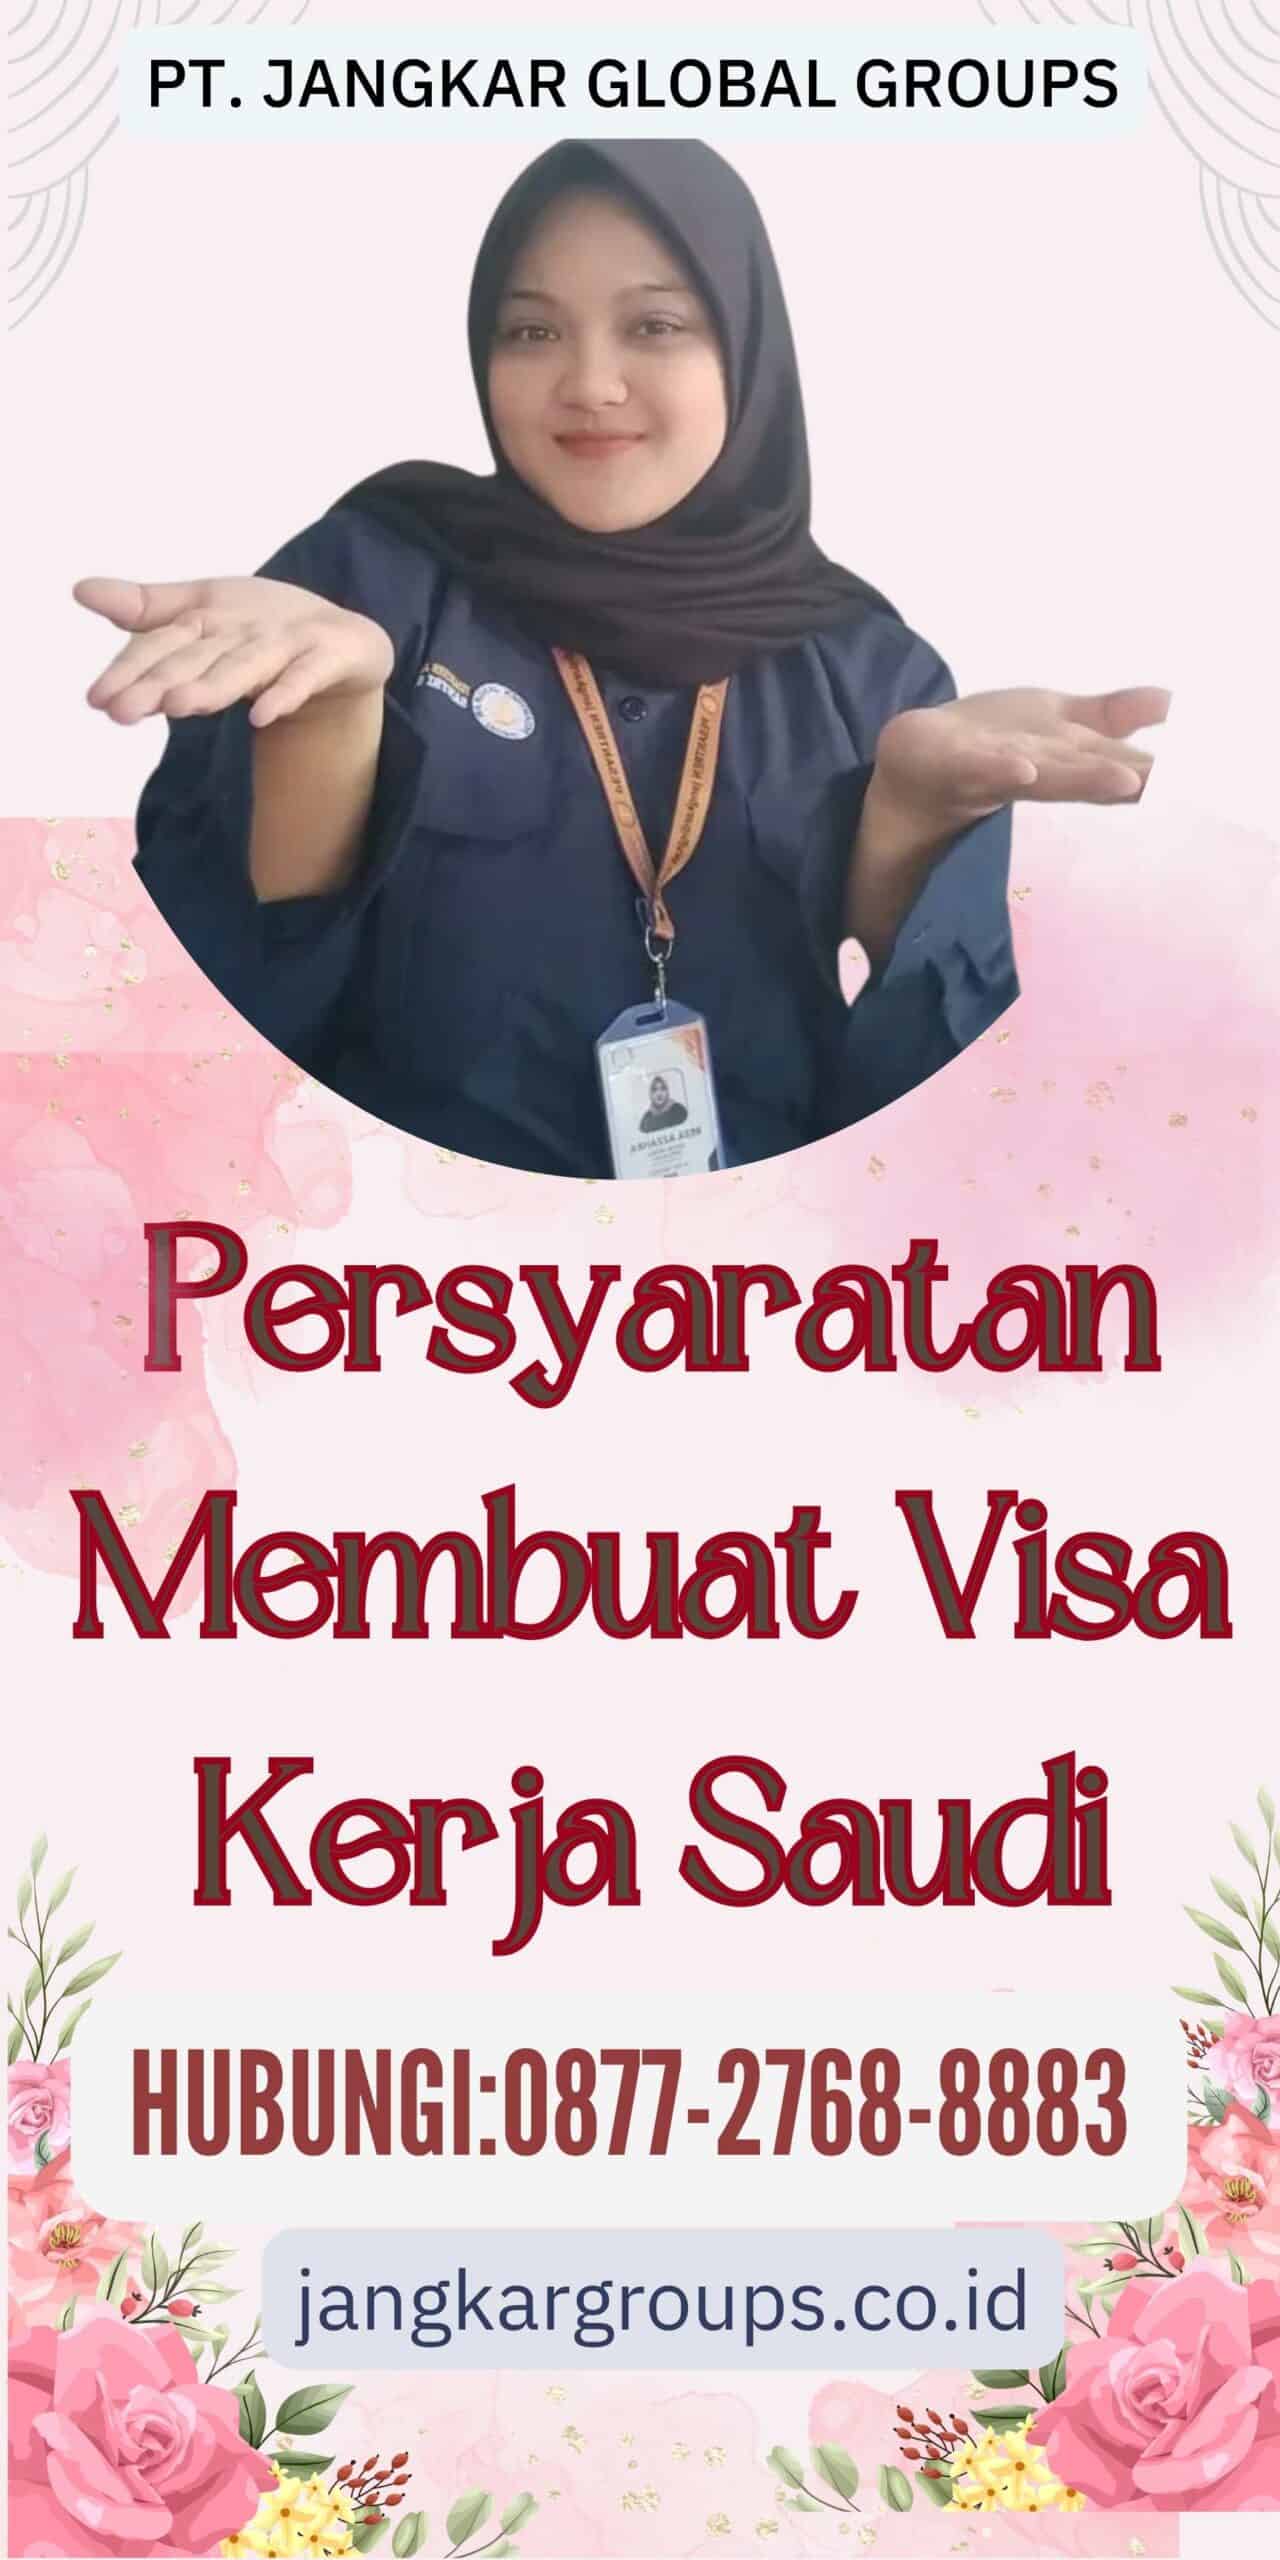 Persyaratan Membuat Visa Kerja Saudi